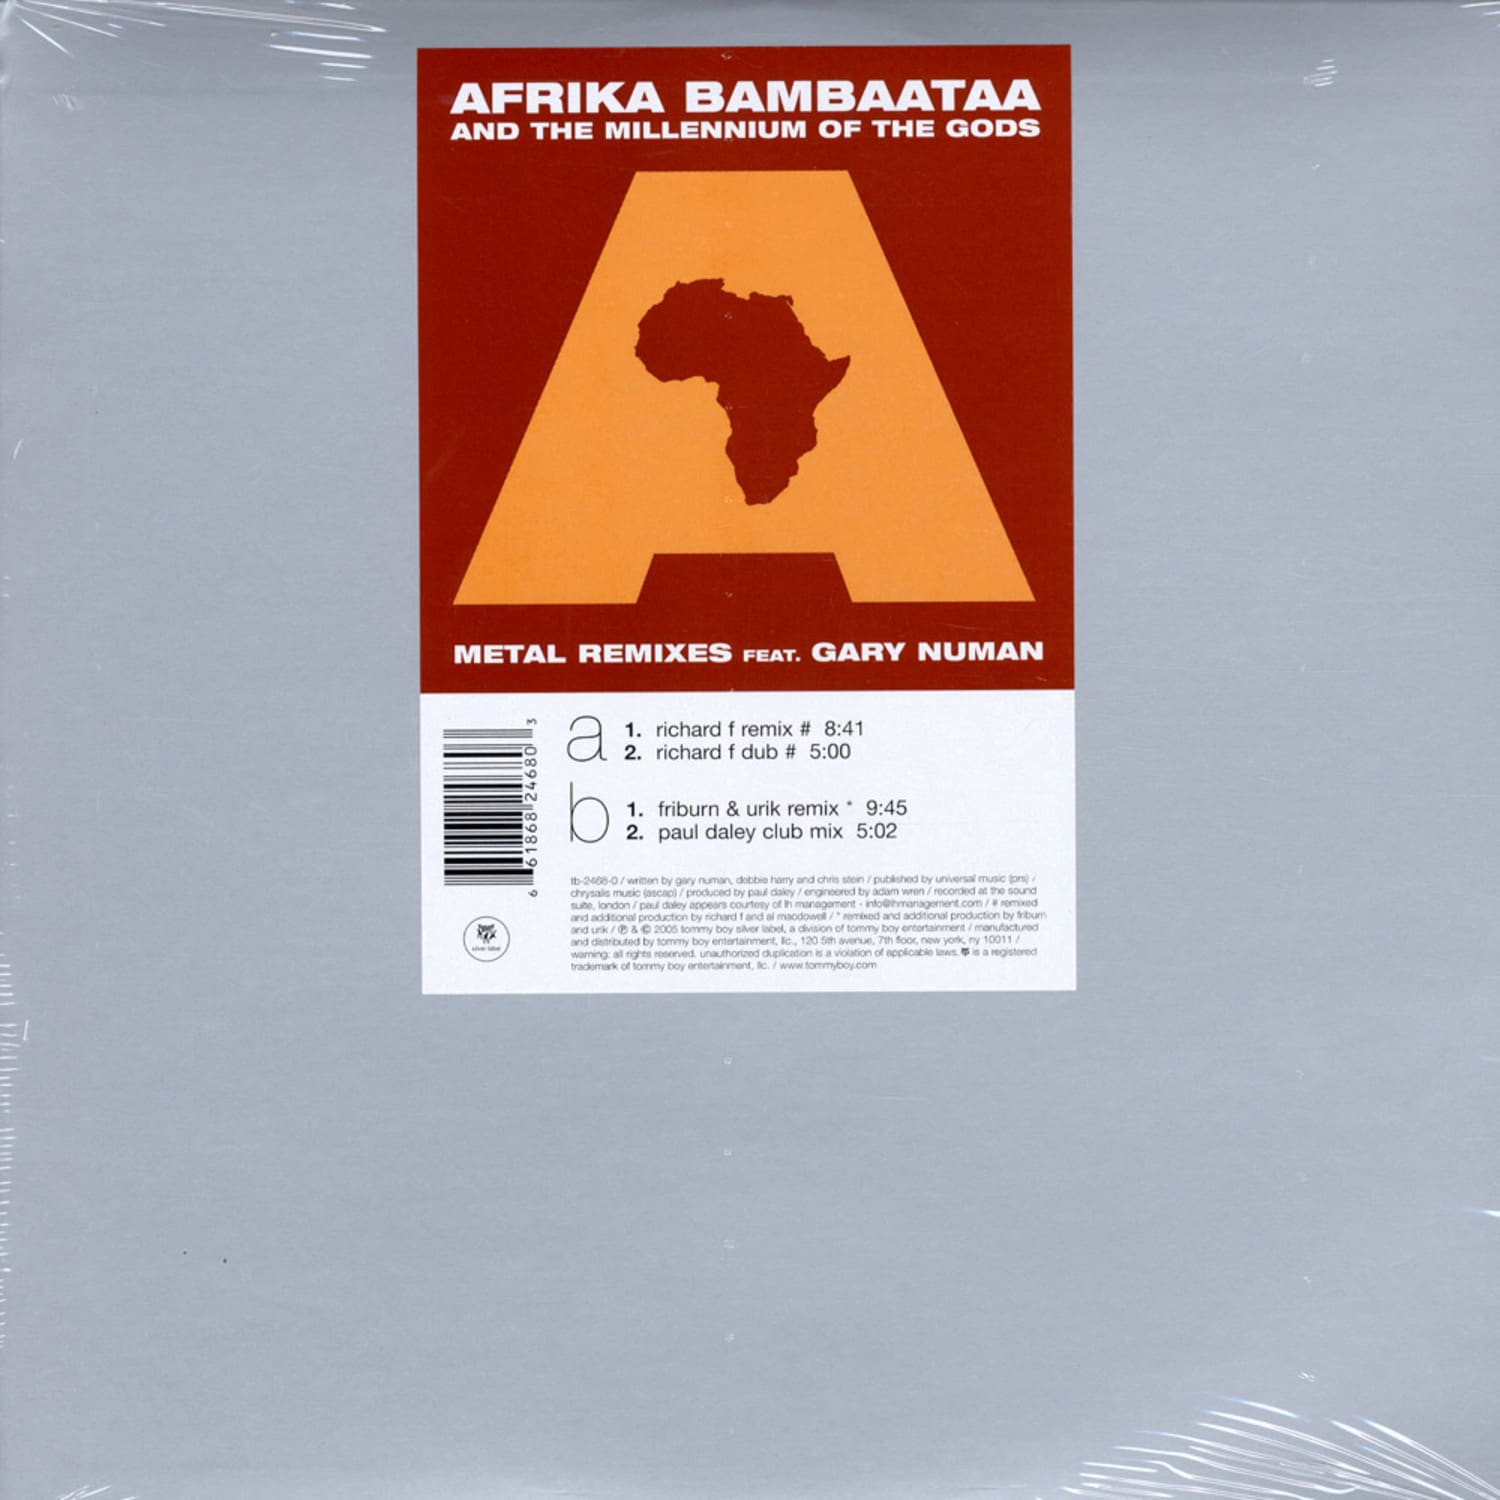 Afrika Bambaata - METAL RMX